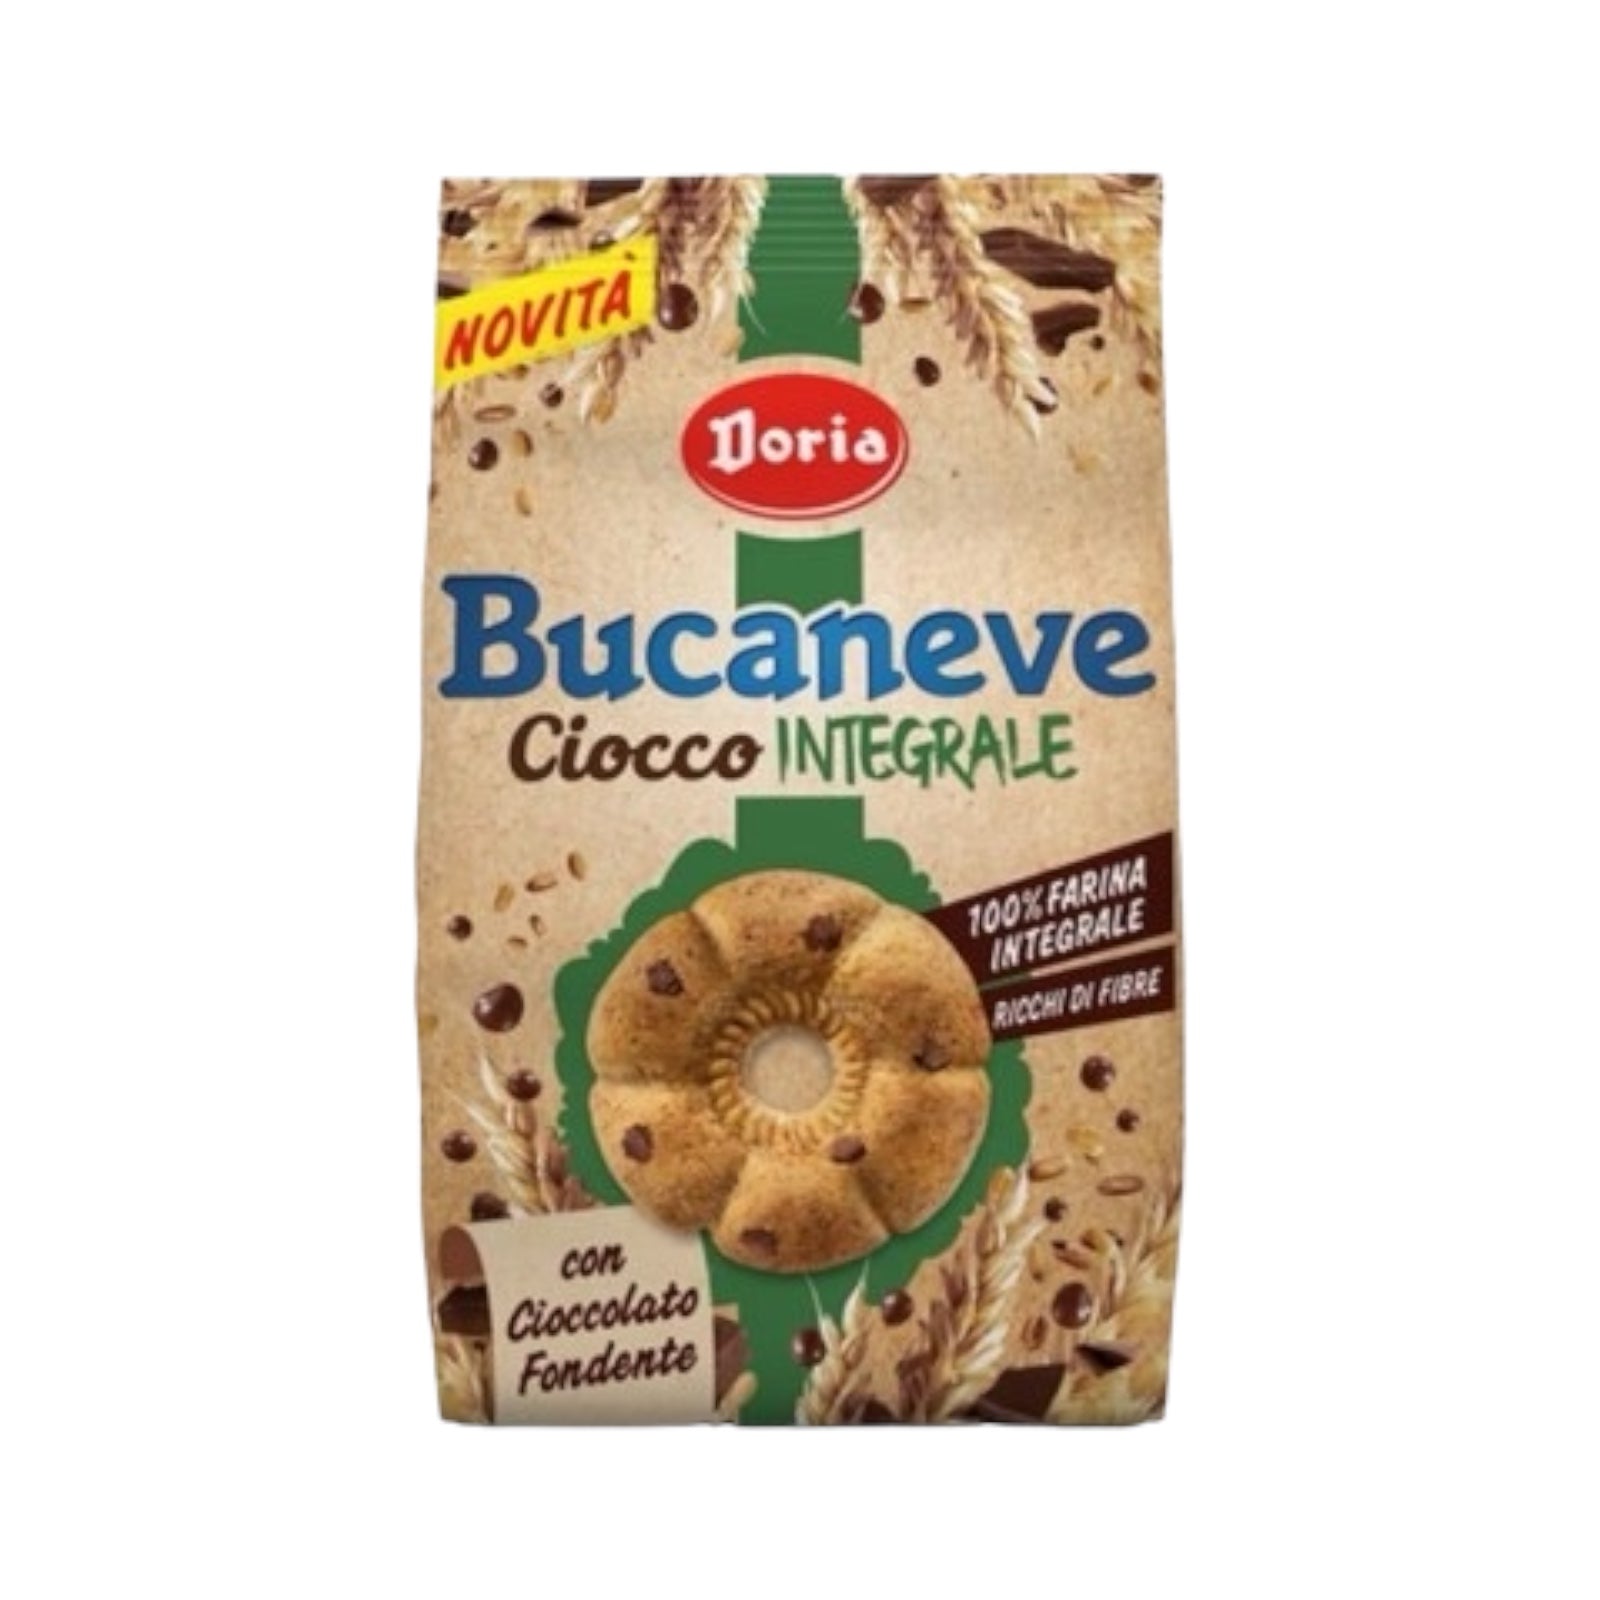 Doria Bucaneve Biscotti / cookies 
Whole wheat with chocolate drops 
Ciocco Intregrali con Gocce di Cioccolato Fondente, 
300gr